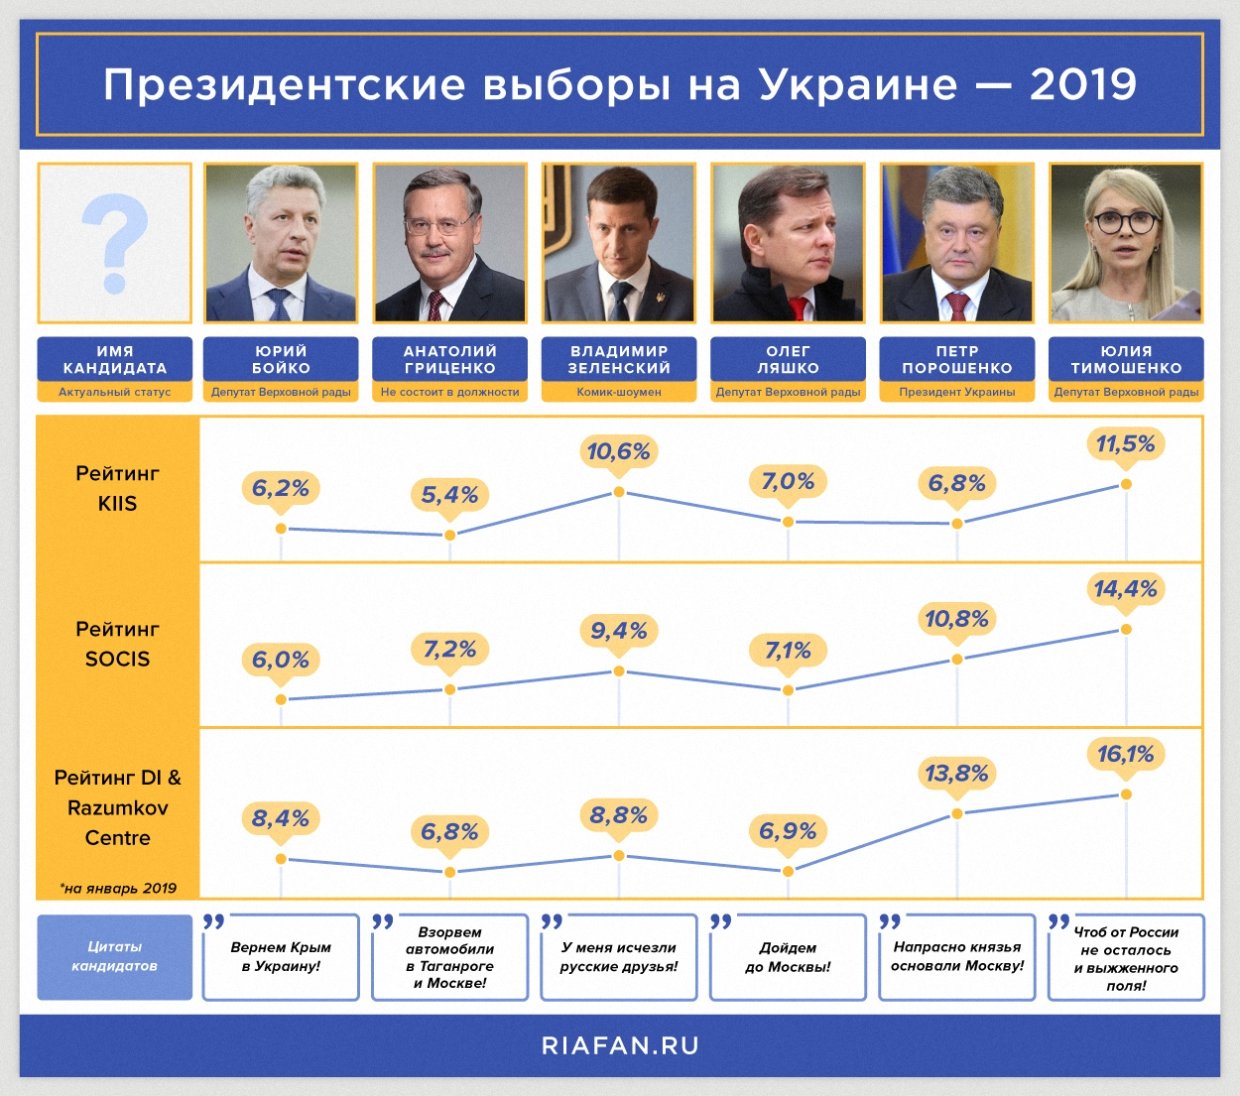 Через сколько следующие выборы. Выборы президента Украины. Выборы президента Украины 2019. Выборы президента Украины следующие. Президентские выборы на Украине (2019).